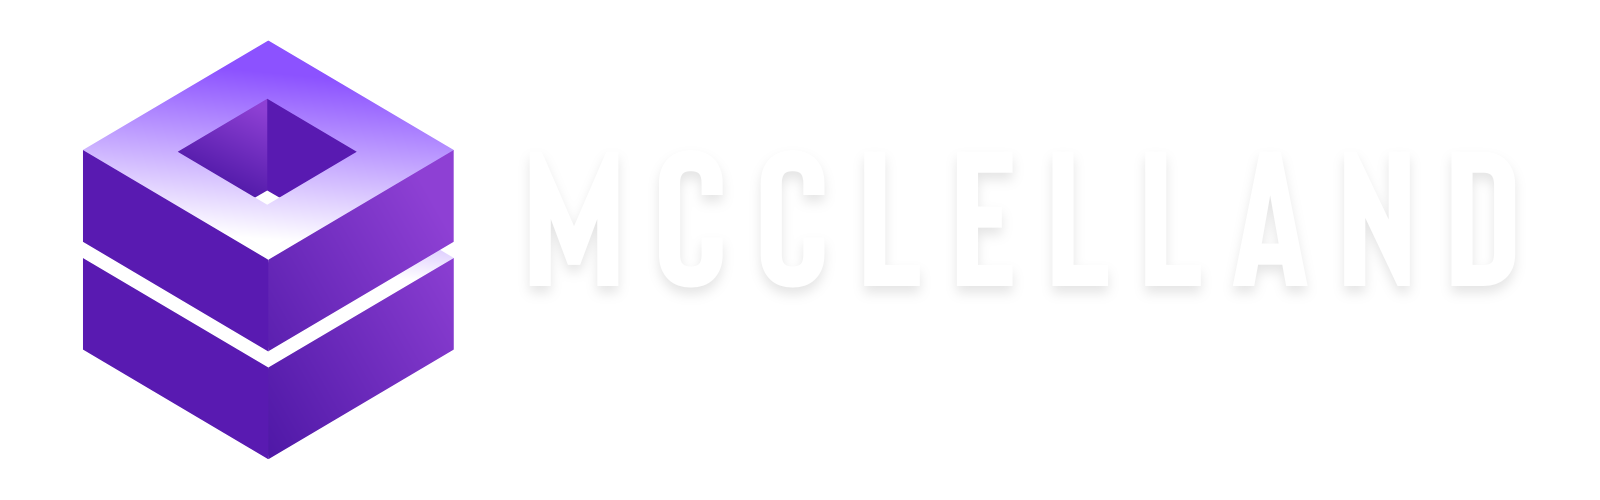 MCCLELLAND WEB DESIGNtransp (2)